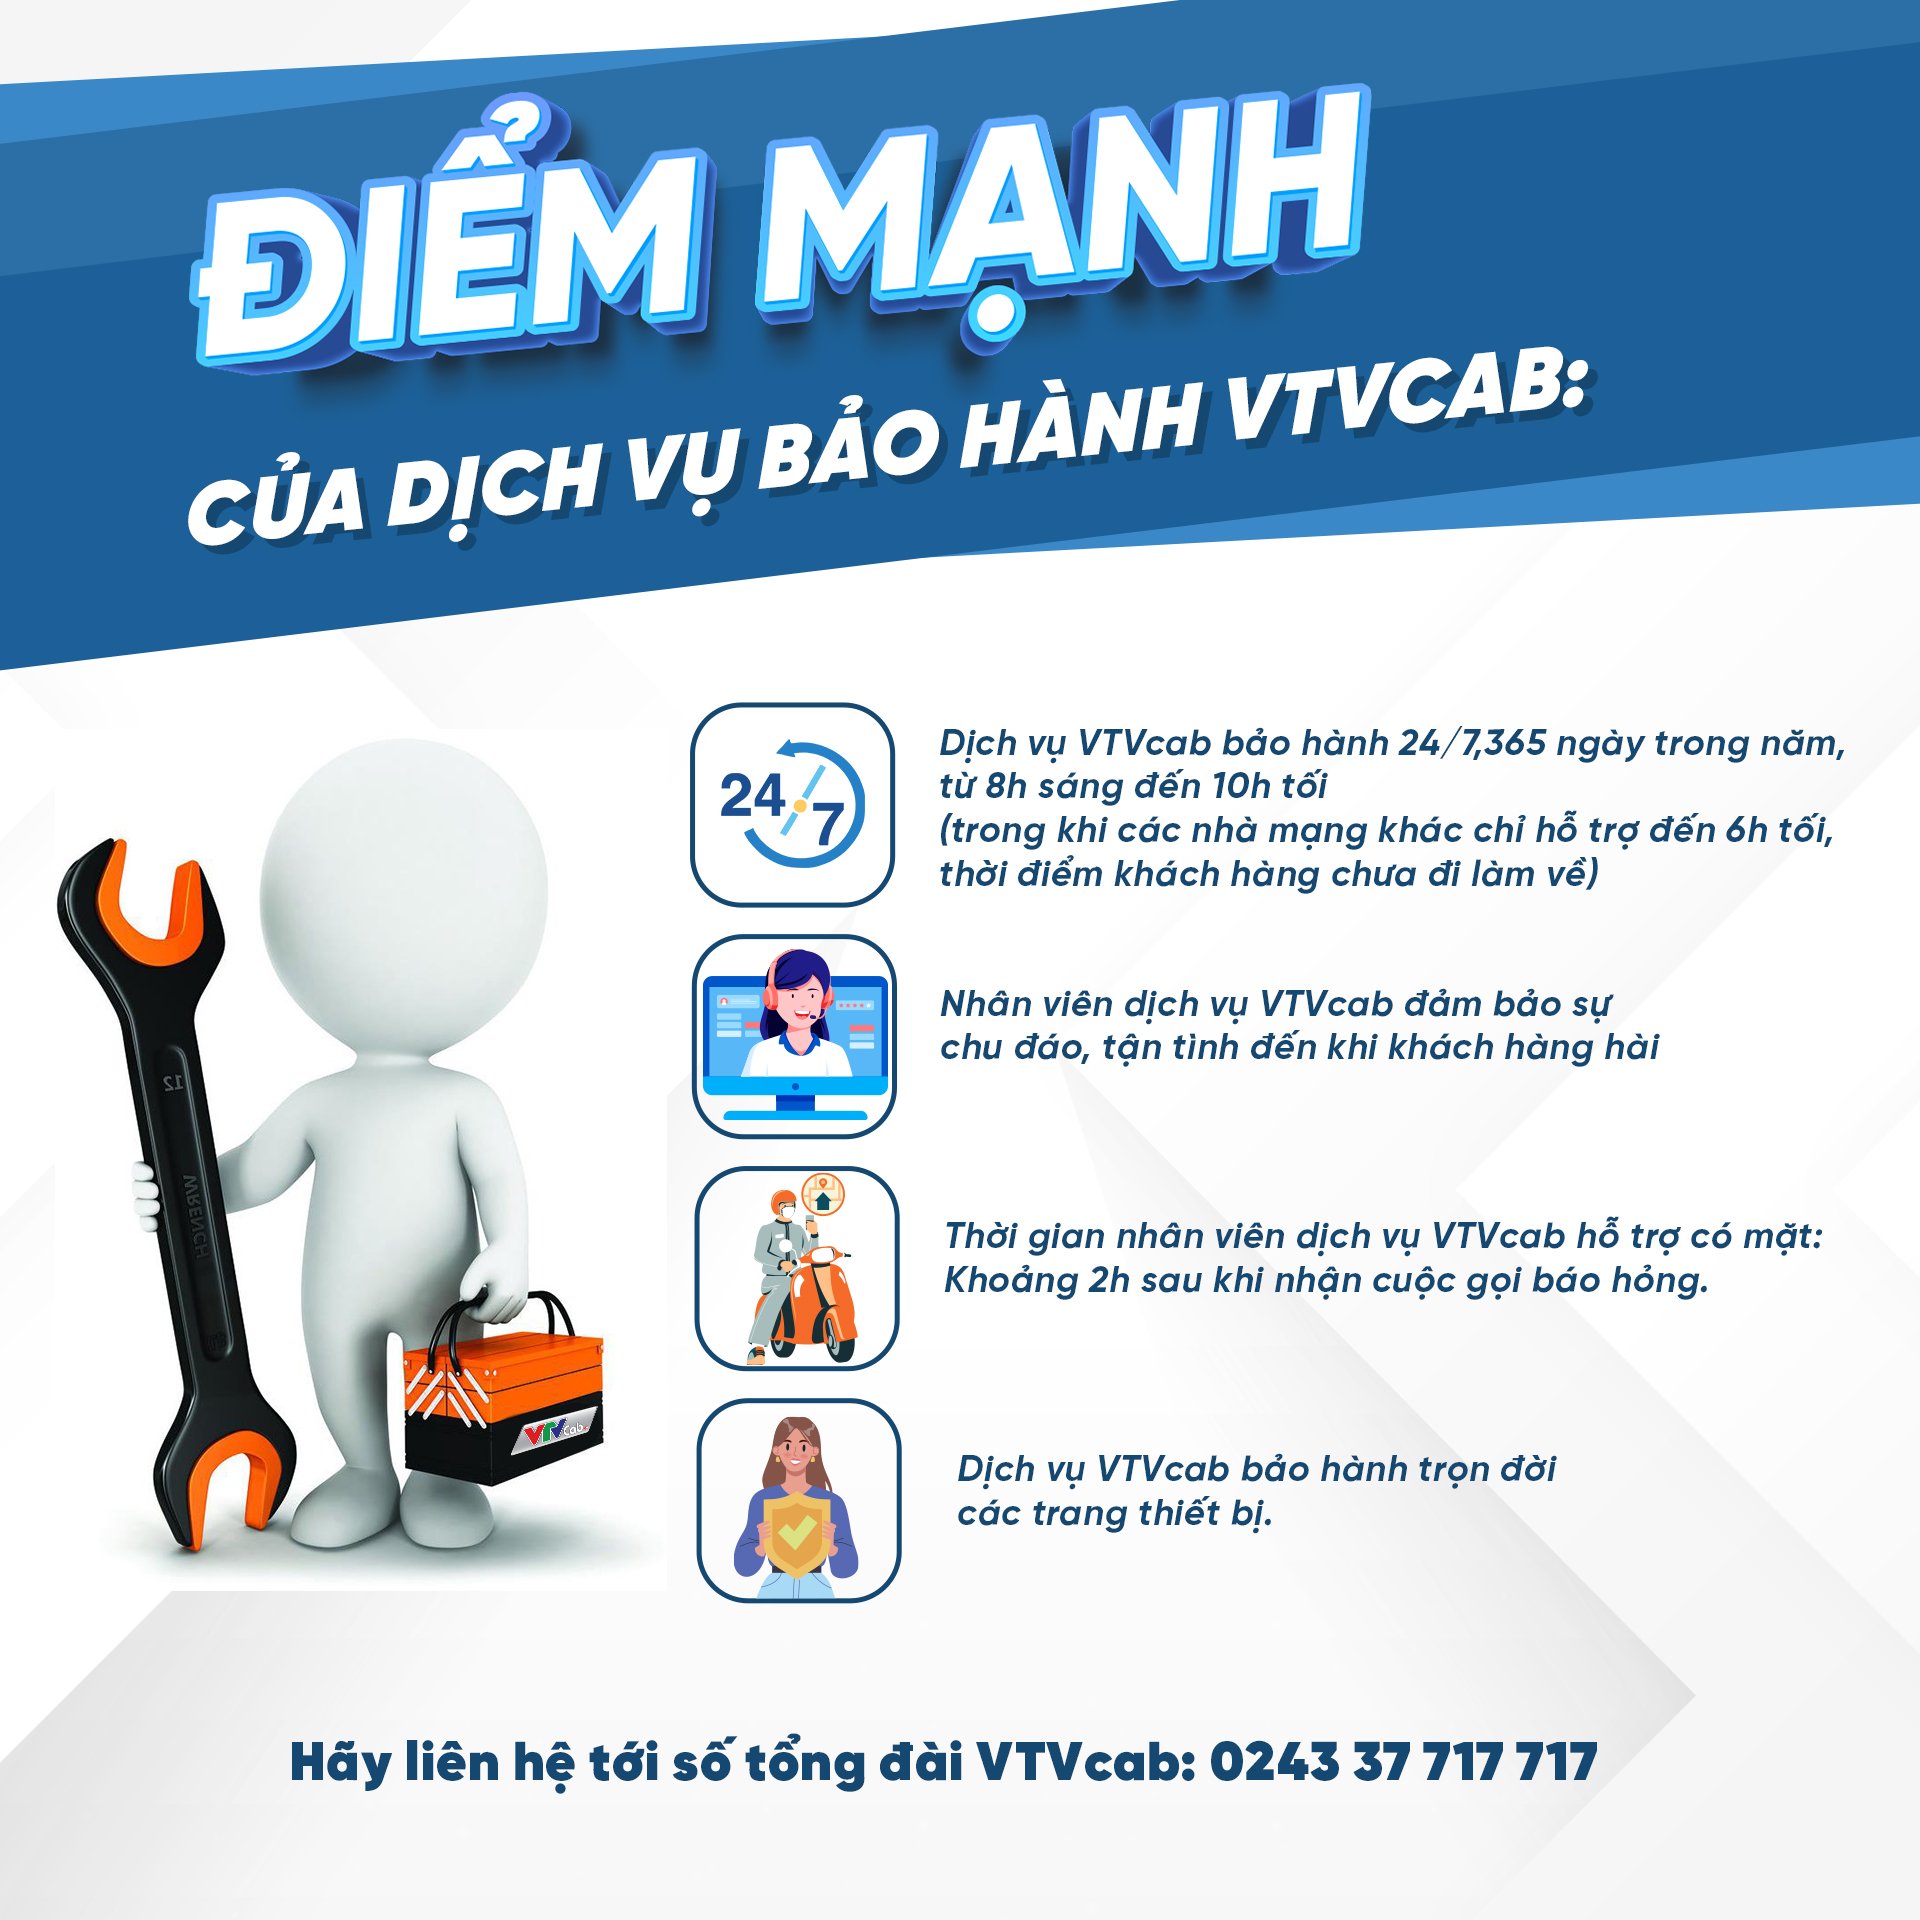 Dịch vụ chăm sóc khách hàng và sửa chữa mùa World Cup của VTVcab